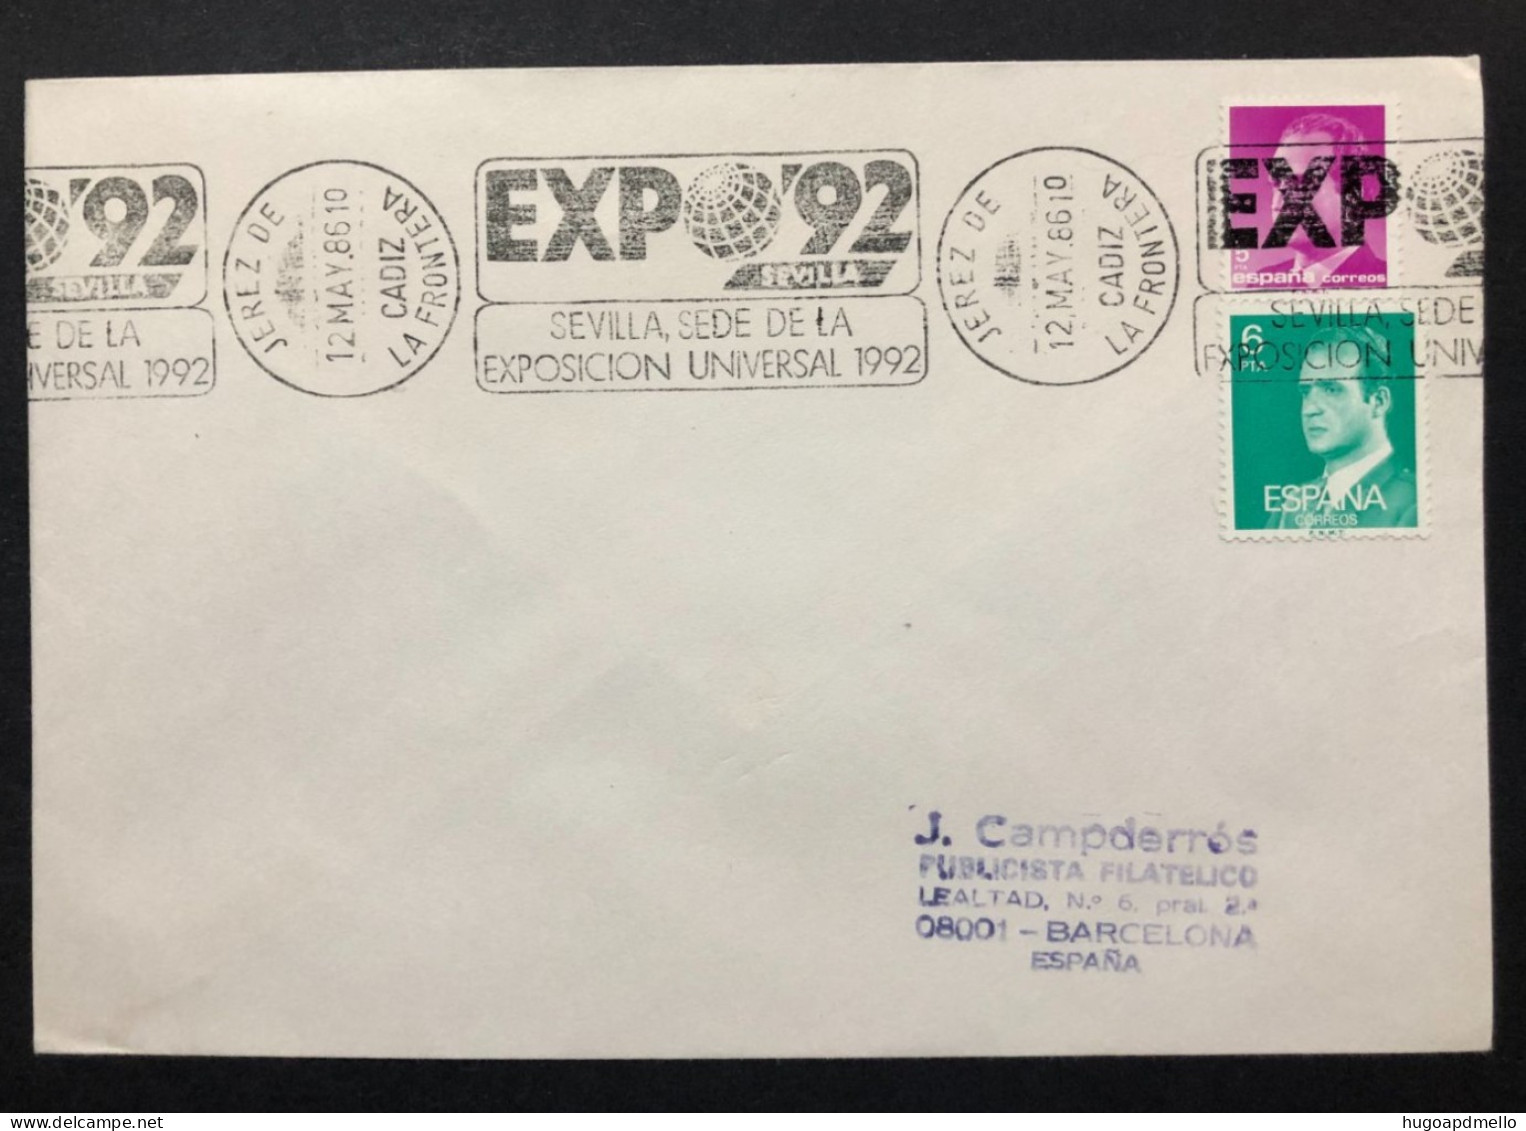 SPAIN, Cover With Special Cancellation « EXPO '92 », « JEREZ DE LA FRONTERA (Cadiz) Postmark », 1986 - 1992 – Siviglia (Spagna)